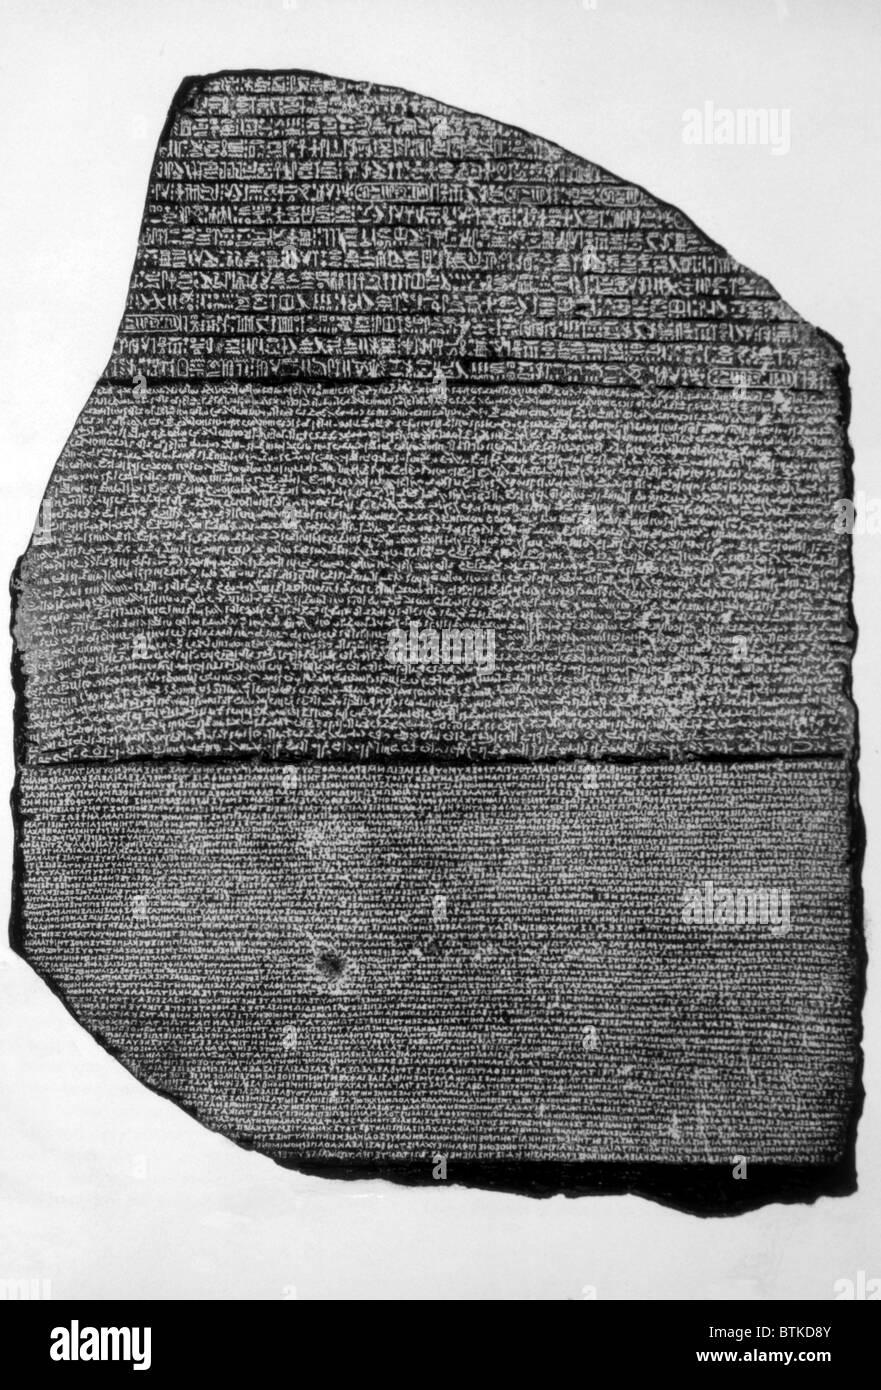 La Rosetta Stone, lastra di basalto inscritta da sacerdoti di Tolomeo V in geroglifici, demoniaco e greco, trovati da Napoleone i soldati nel 1799, dal British Museum Foto Stock